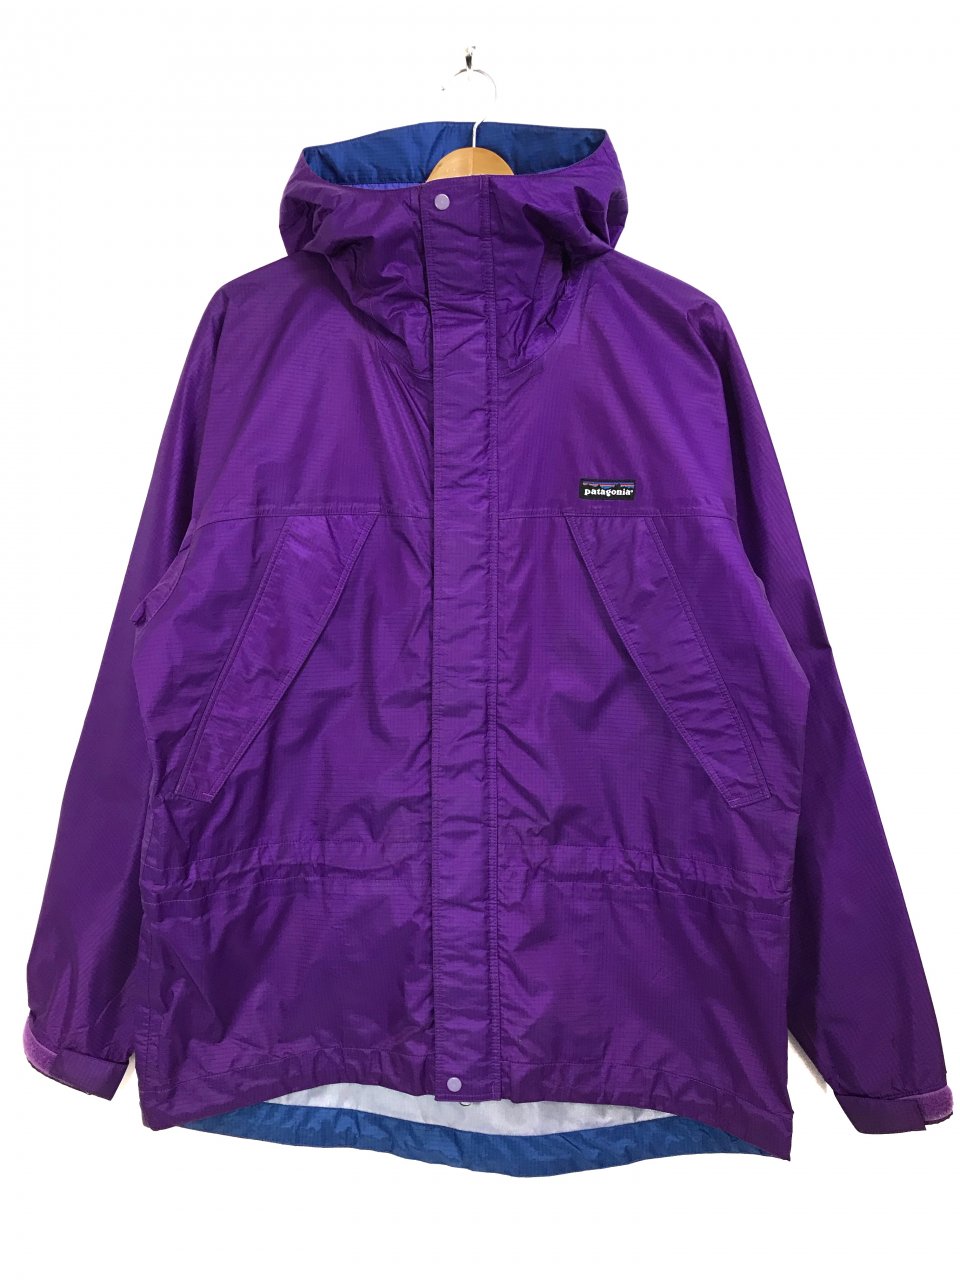 94年 patagonia Super Pluma Jacket (Bright Purple) S 90s 雪